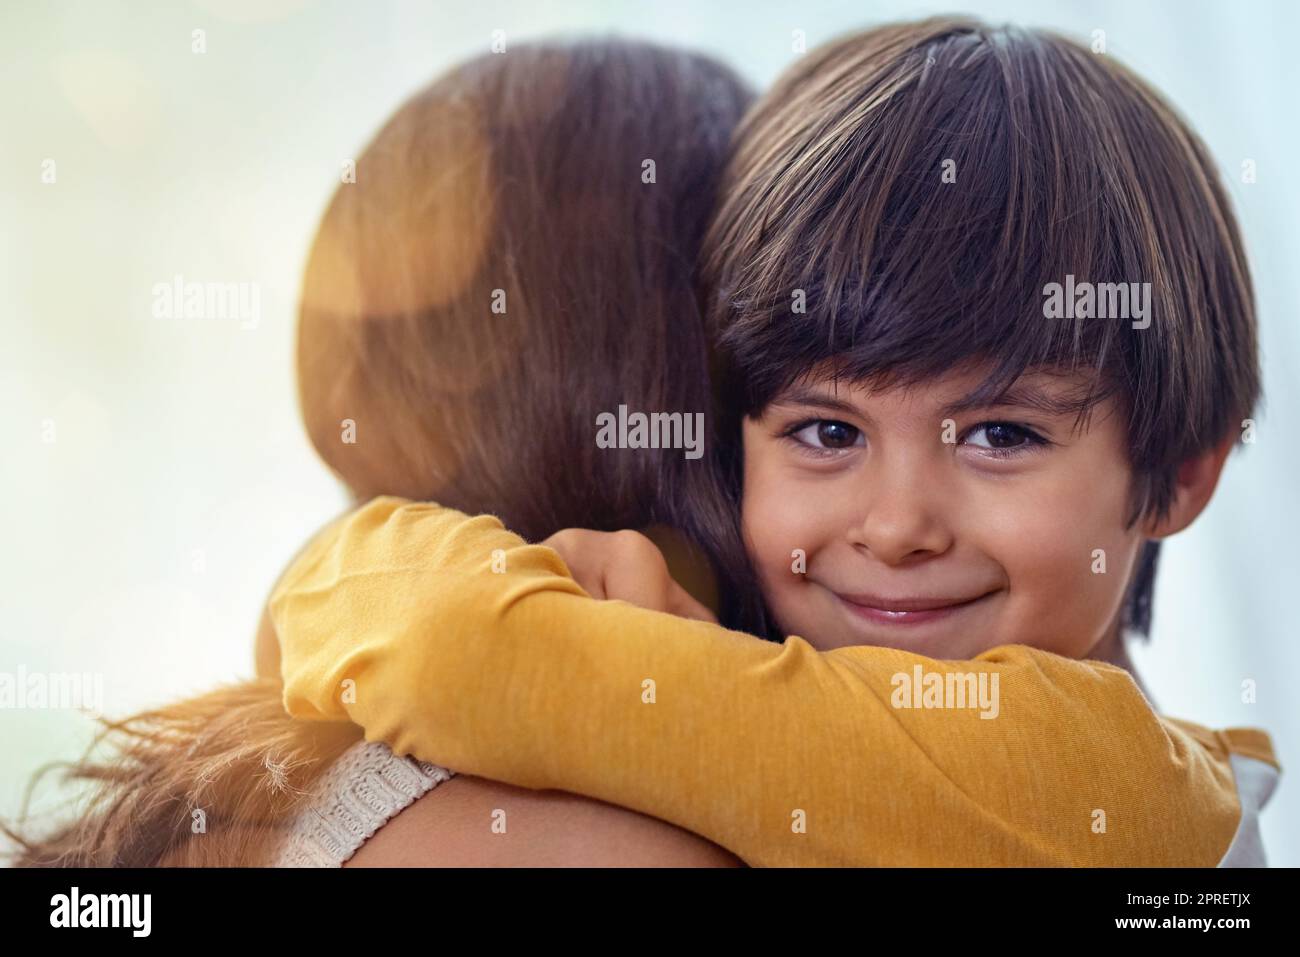 Diese Mutter-Sohn-Bindung war schon immer eine besondere. Ein entzückender kleiner Junge umarmte seine Mutter zu Hause liebevoll. Stockfoto